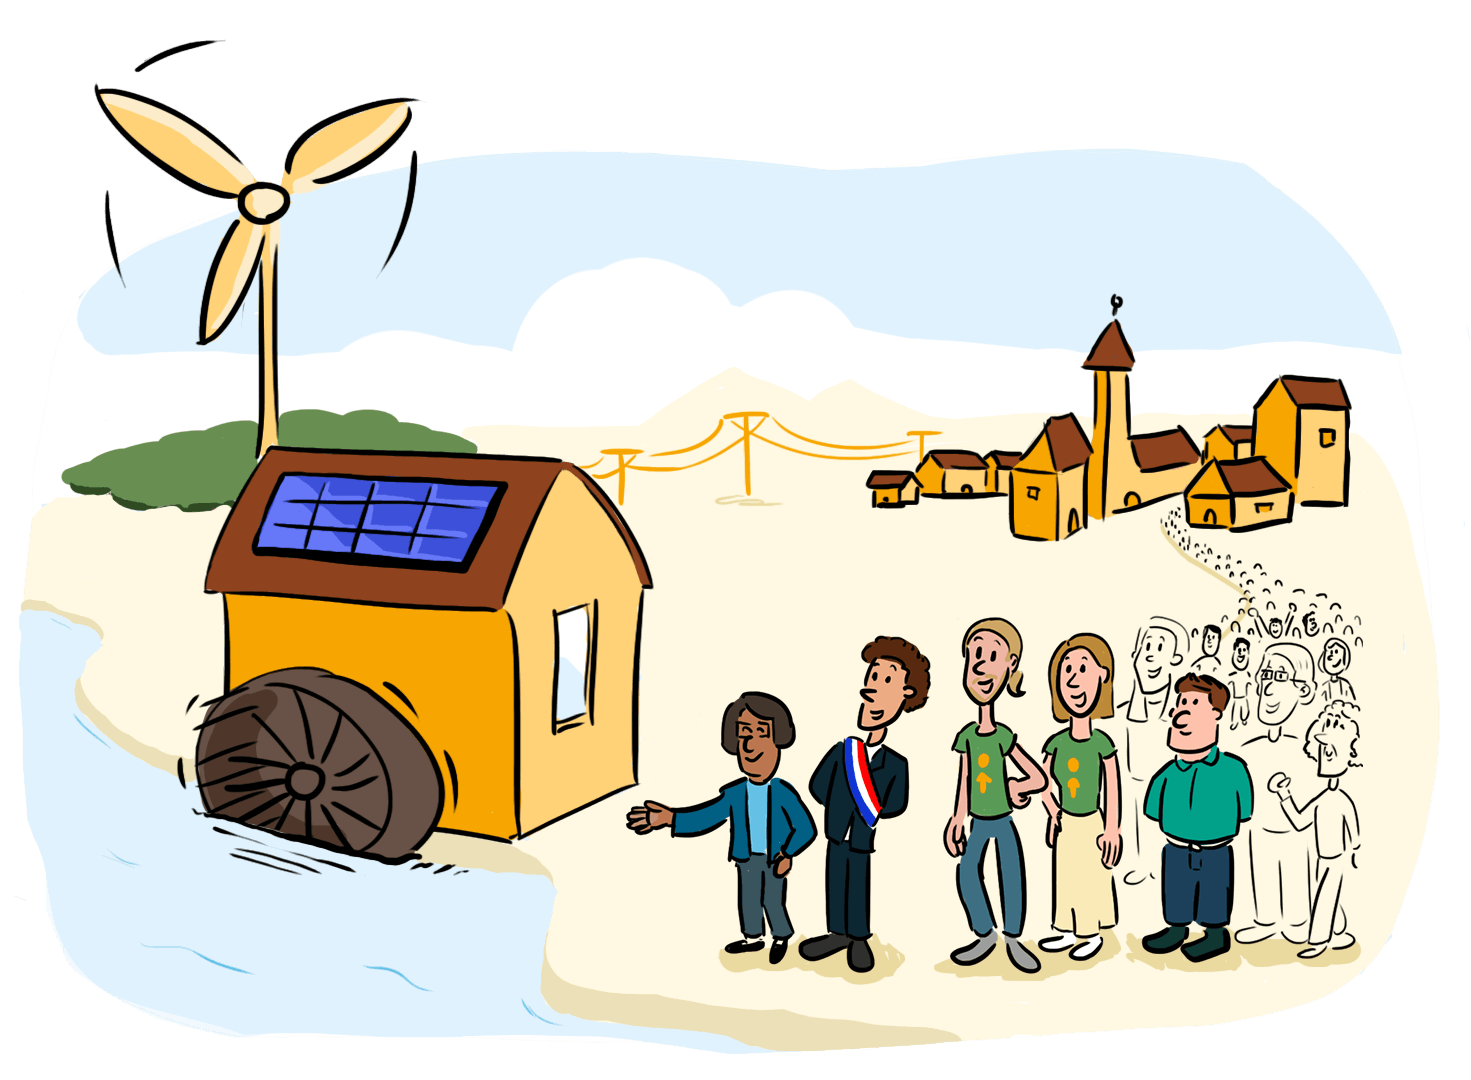 énergie renouvelable solaire éolienne photovoltaique dessin collectif coopératif